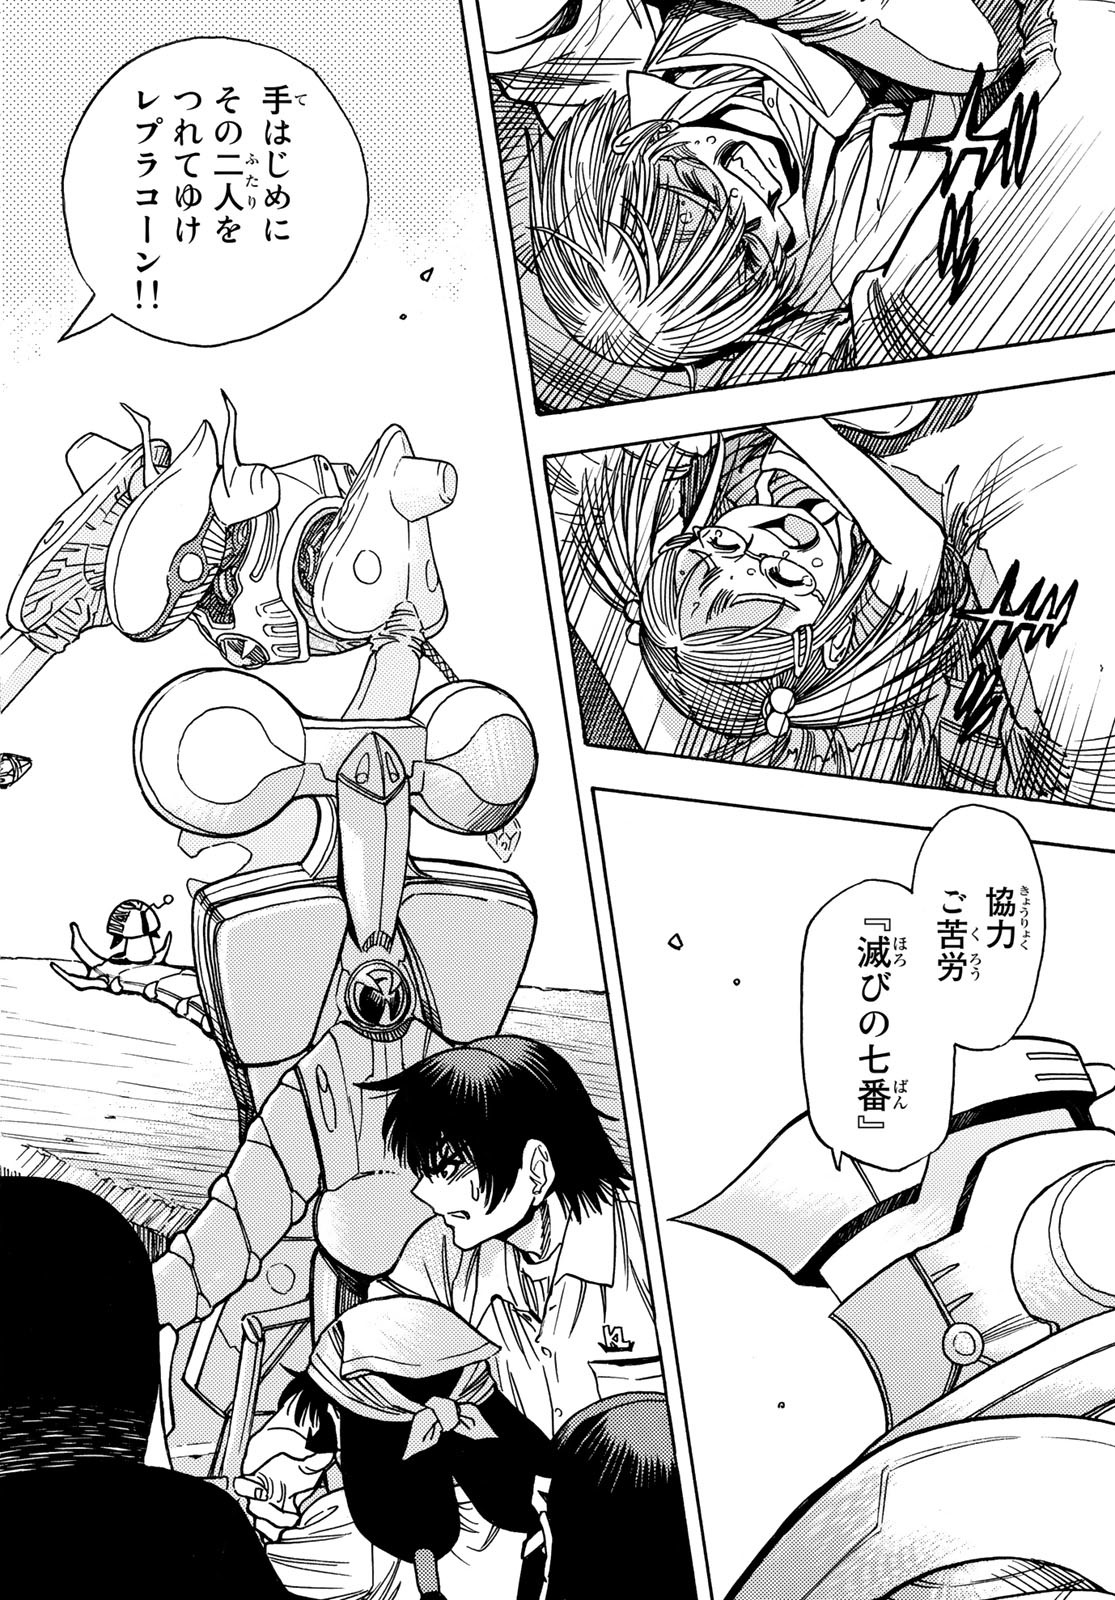 Mugou no Schnell Gear: Chikyuugai Kisouka AI - Chapter 38 - Page 2